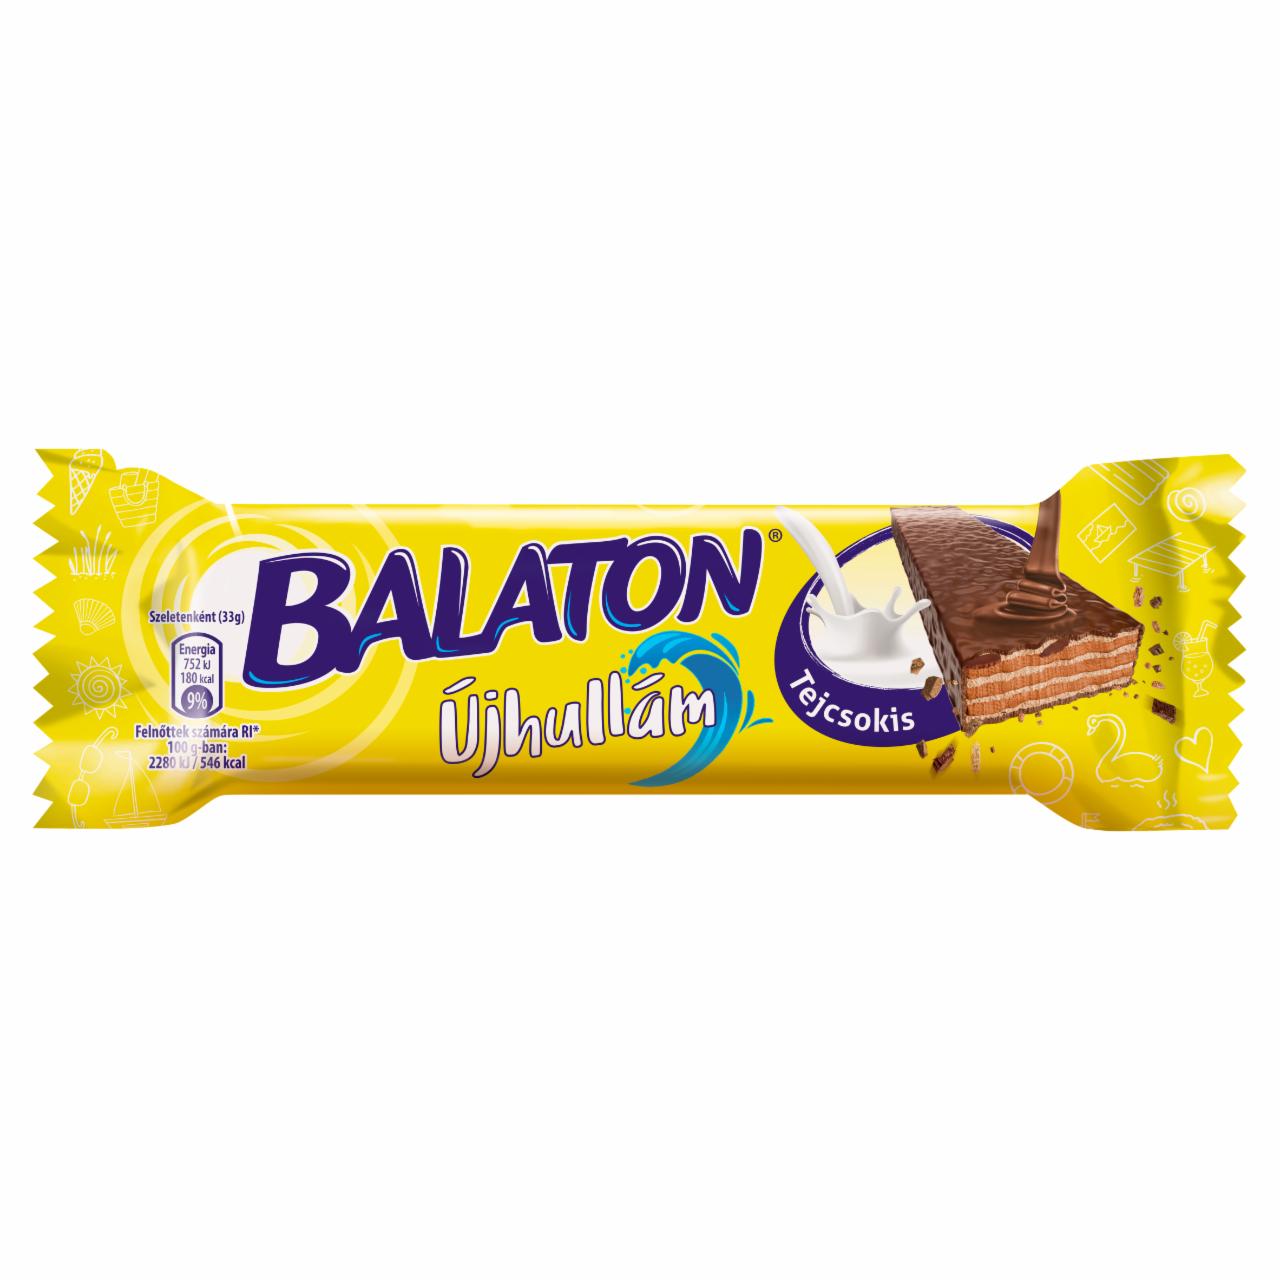 Képek - Balaton Újhullám tejcsokoládéval mártott, kakaós krémmel töltött ostya 33 g